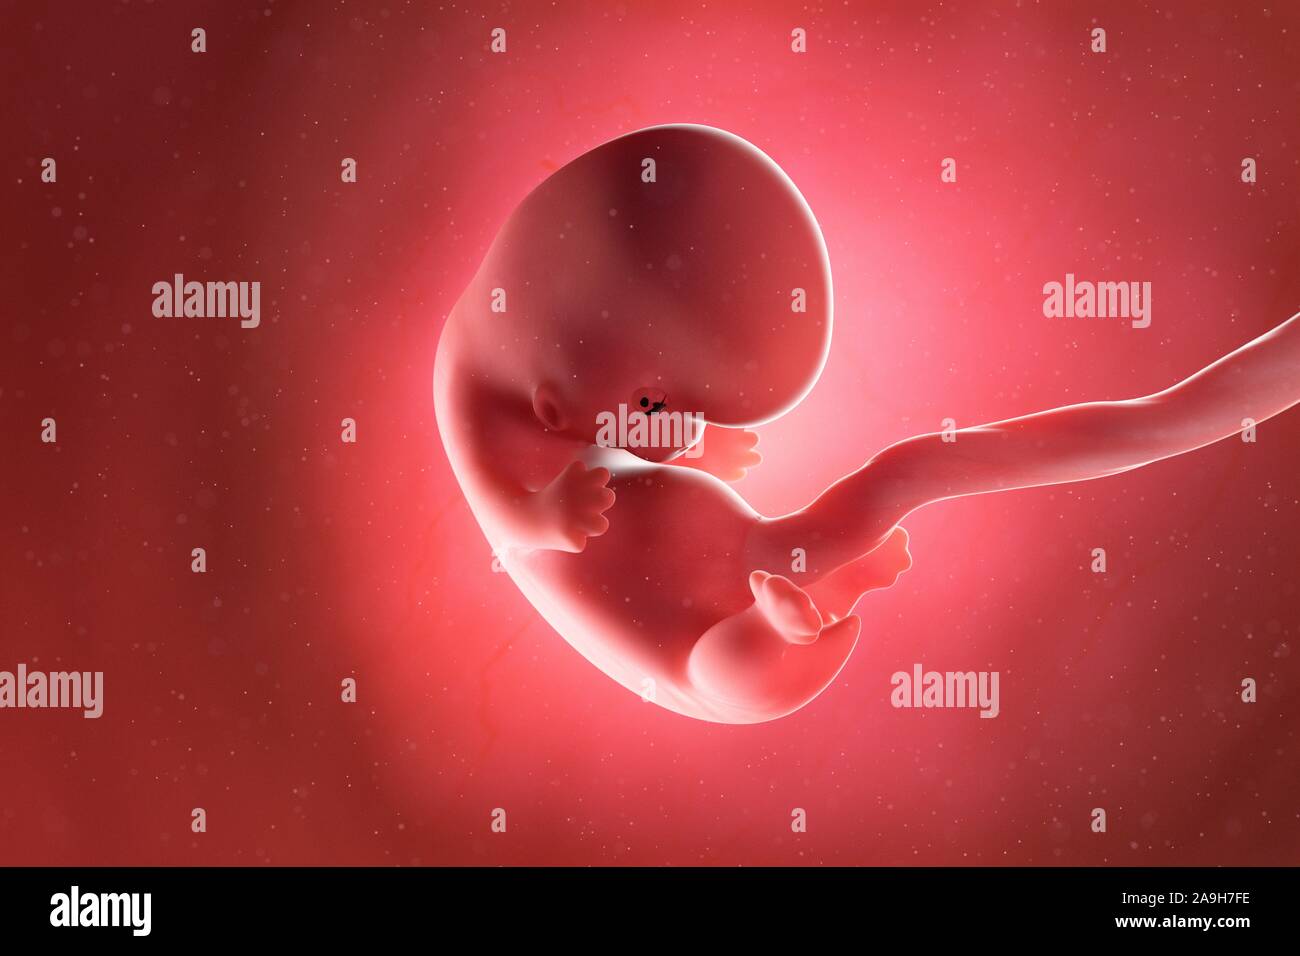 Fœtus à la semaine 8, illustration Banque D'Images